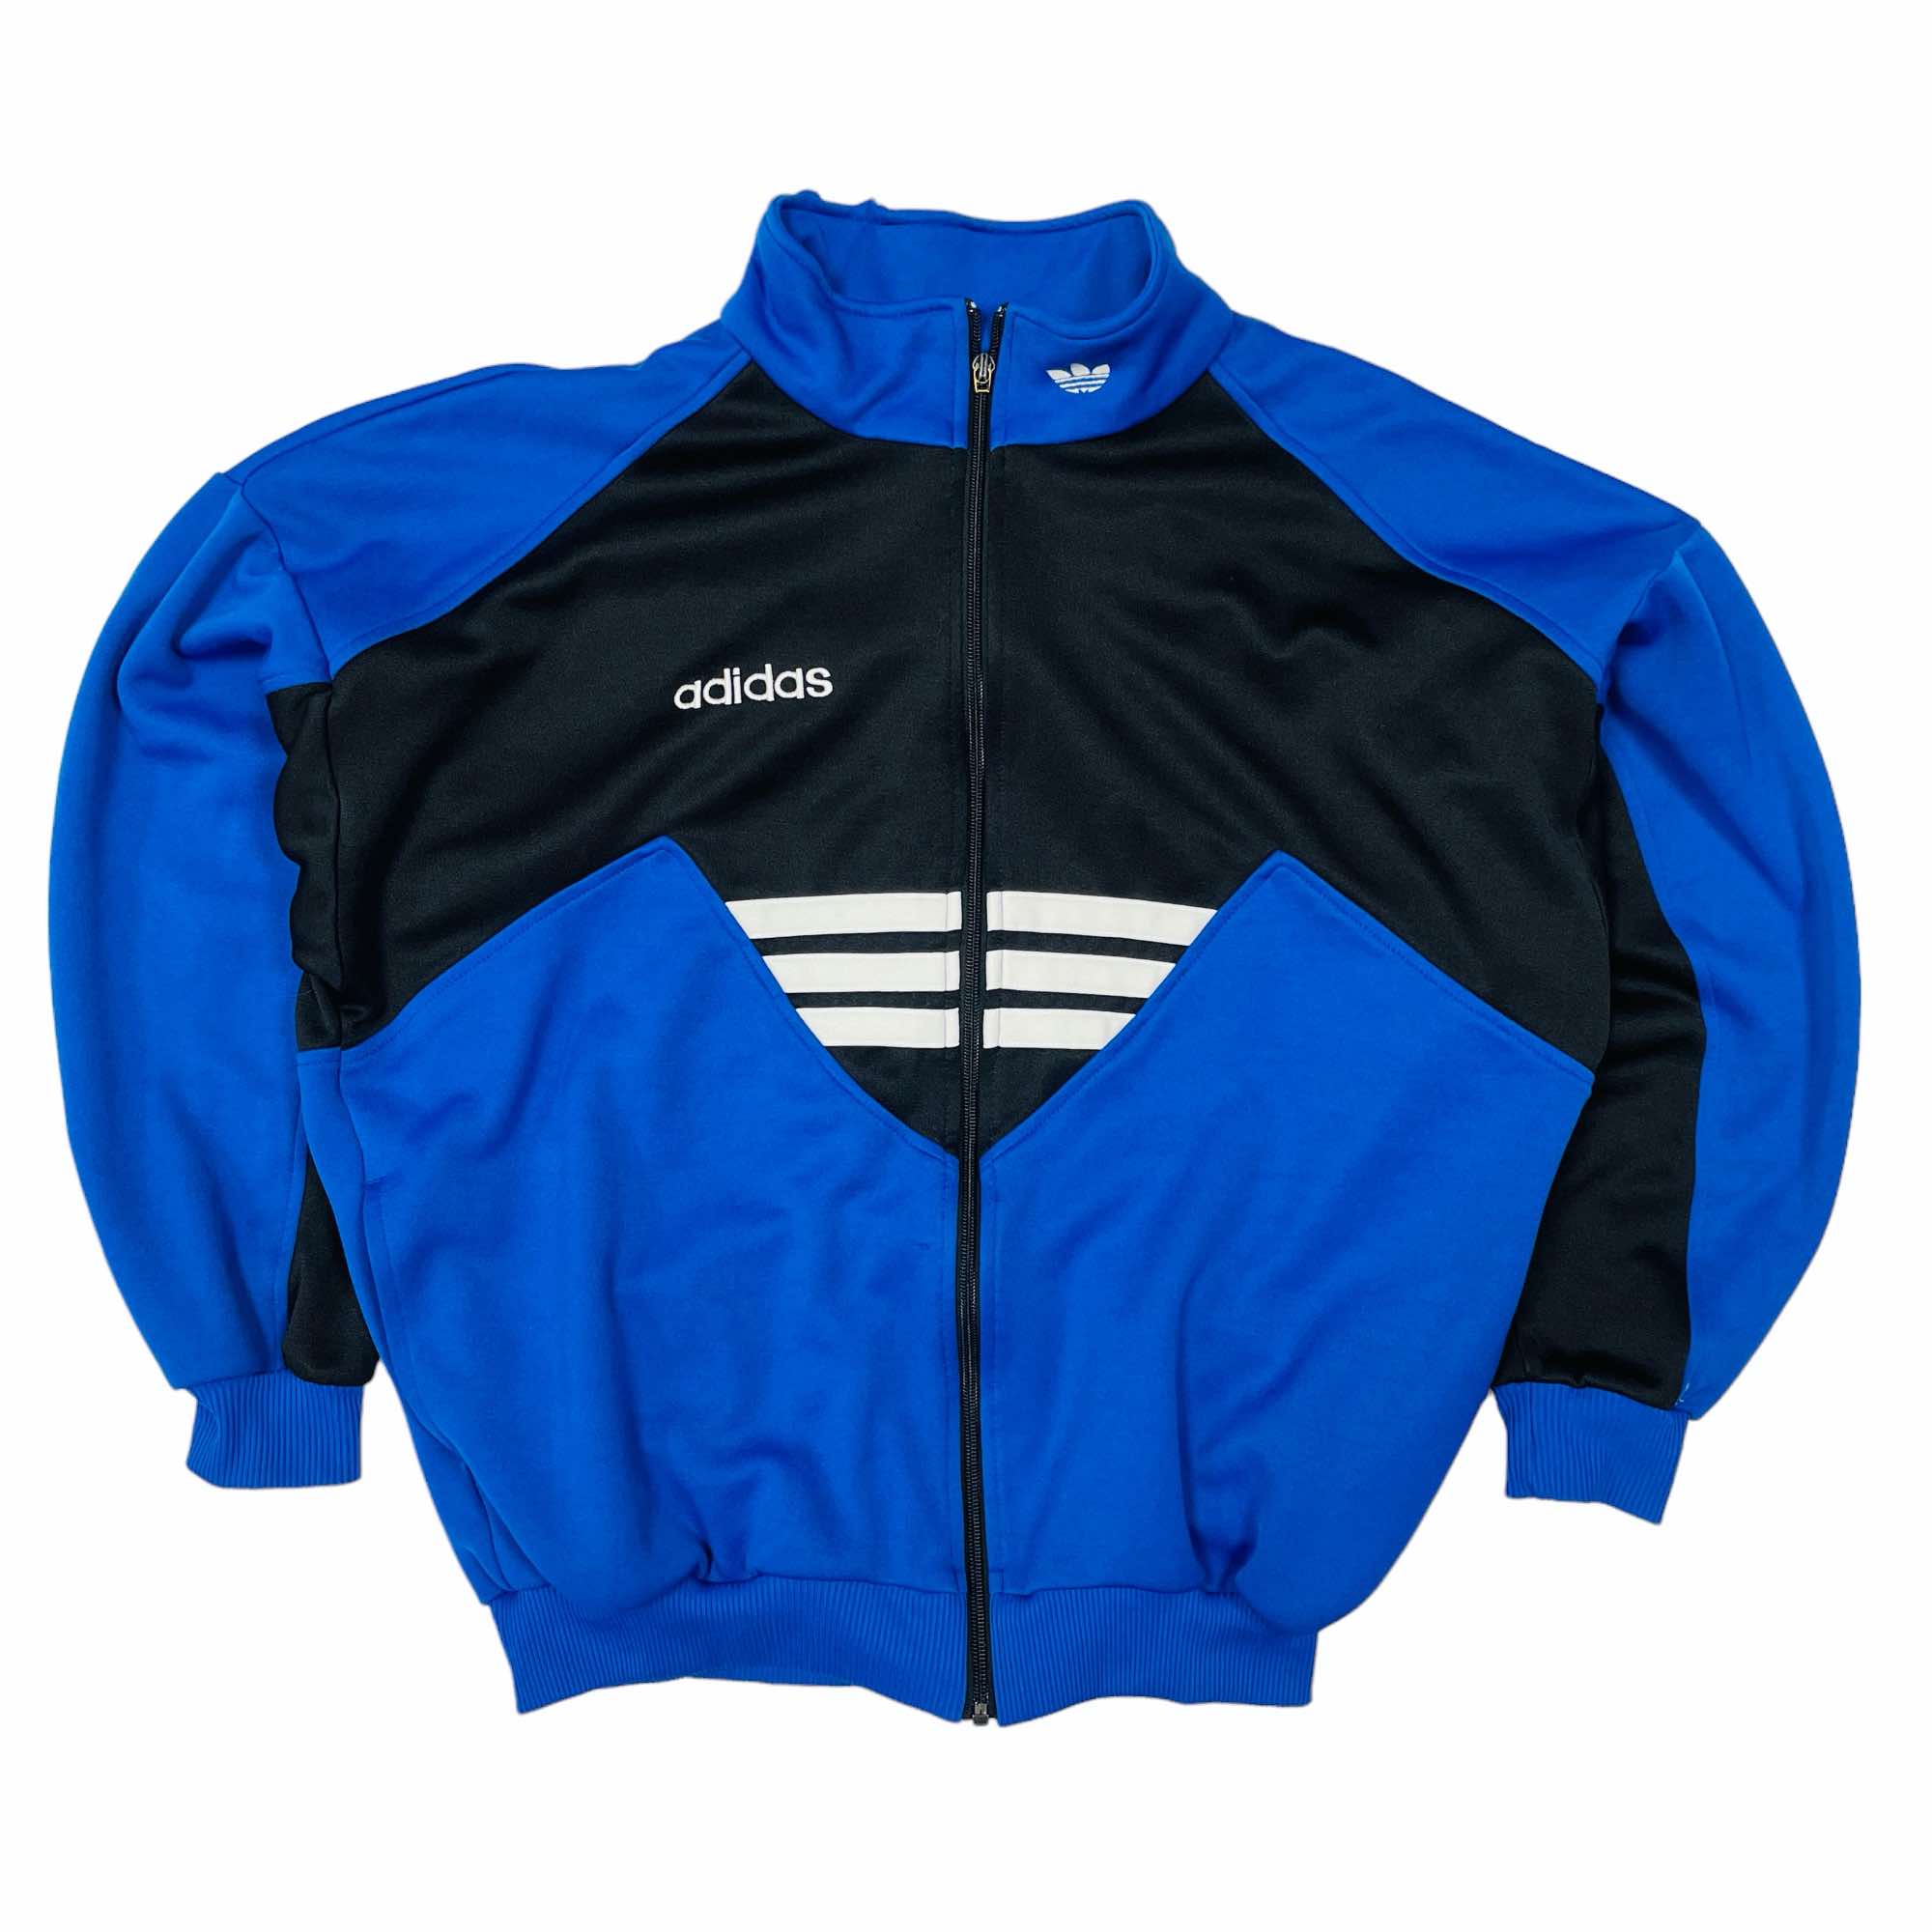 90s Adidas Track Jacket - Large